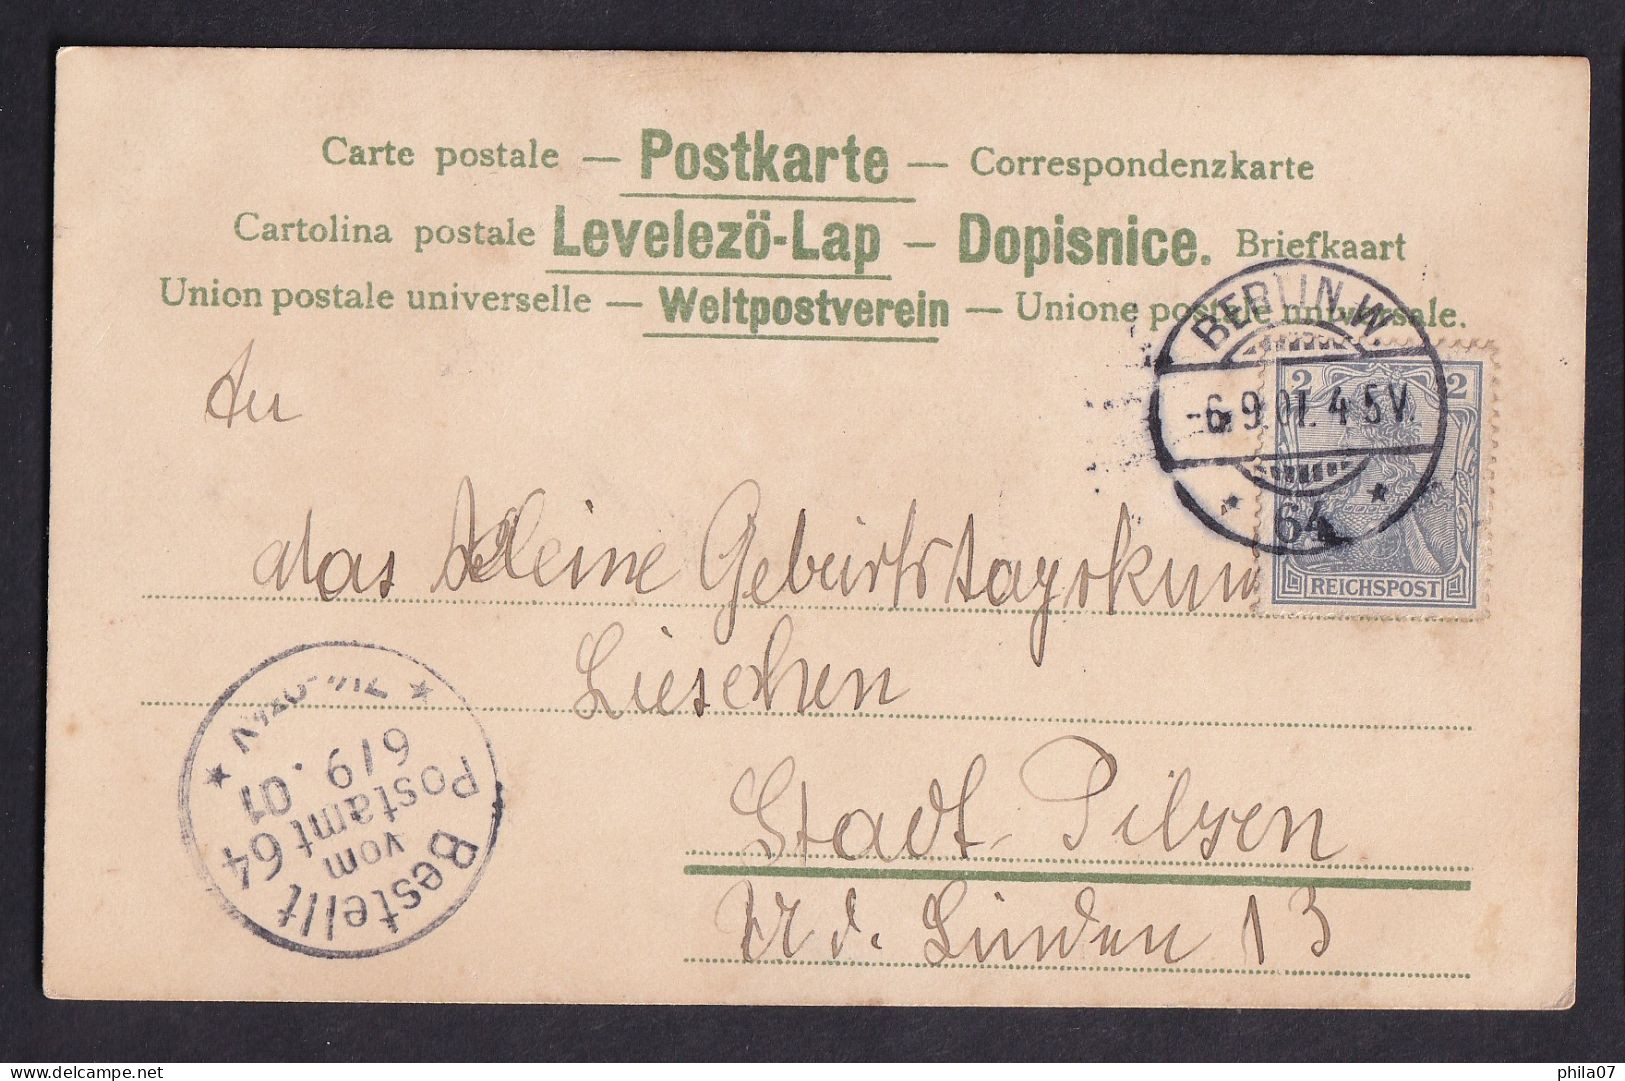 Gruss Aus ... / Sieh Ich Will Dir Heute Geben,... / Year 1901 / Long Line Postcard Circulated, 2 Scans - Saluti Da.../ Gruss Aus...